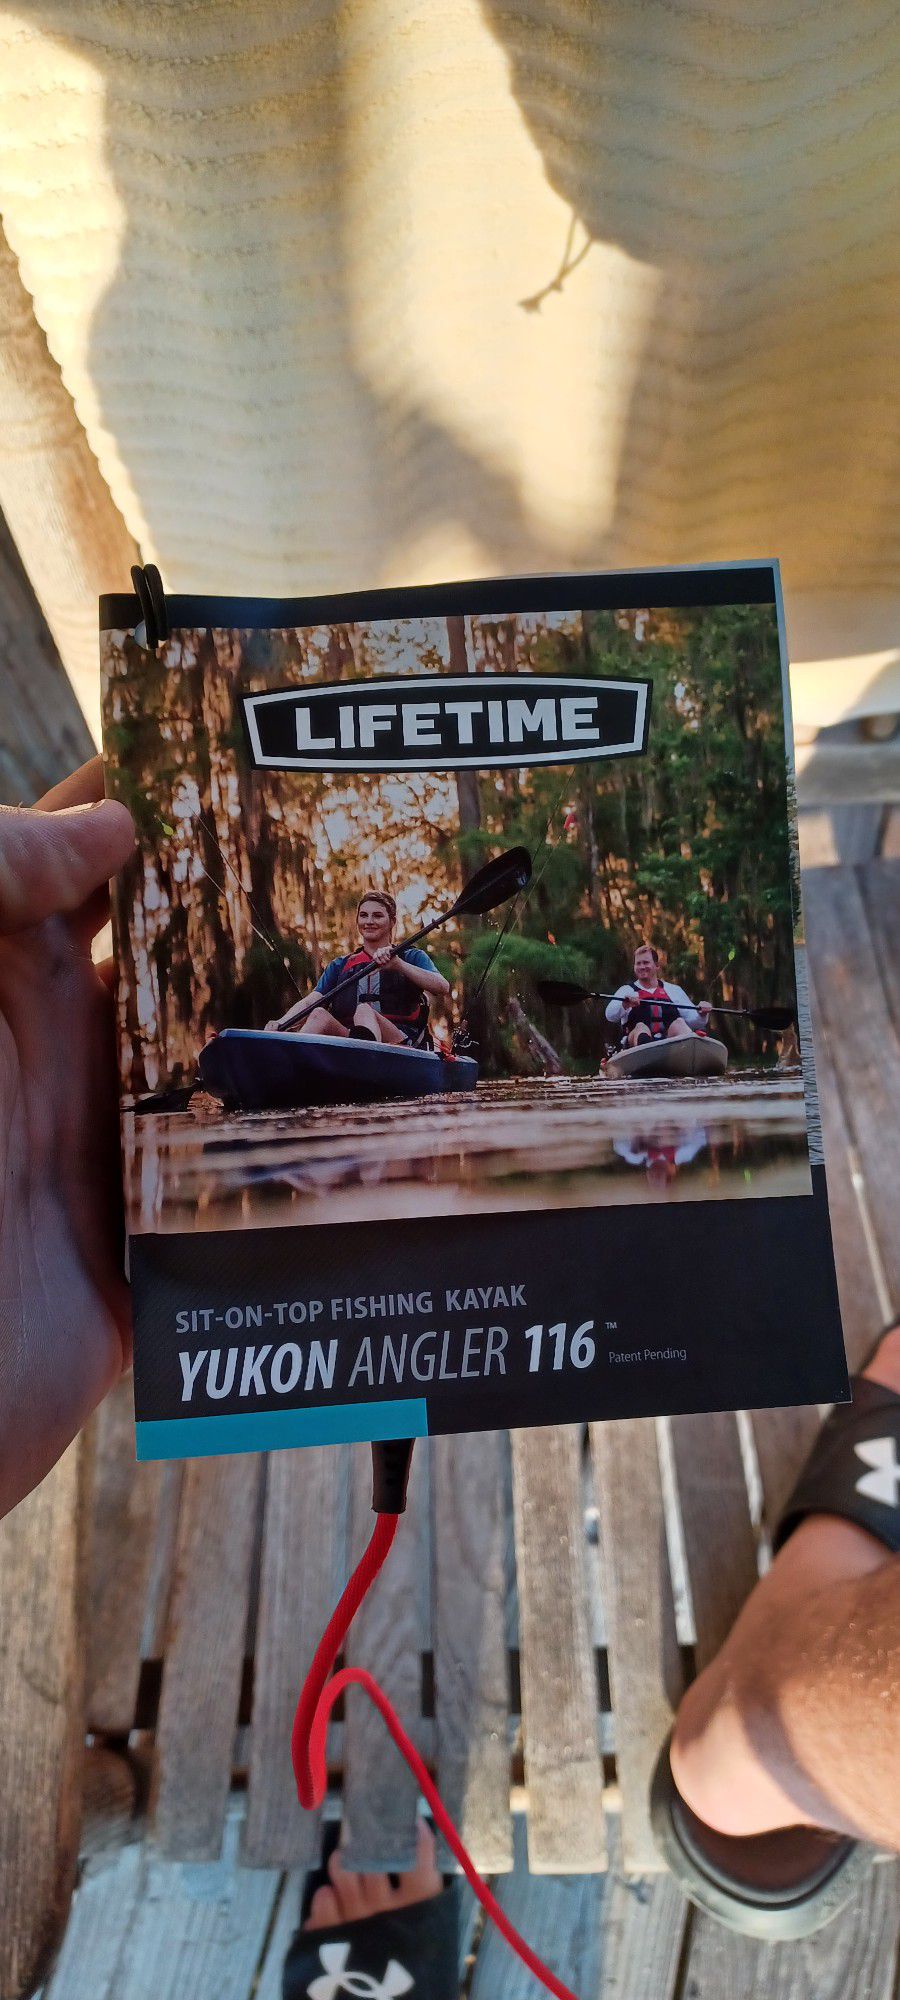 Lifetime Yukon angler 116